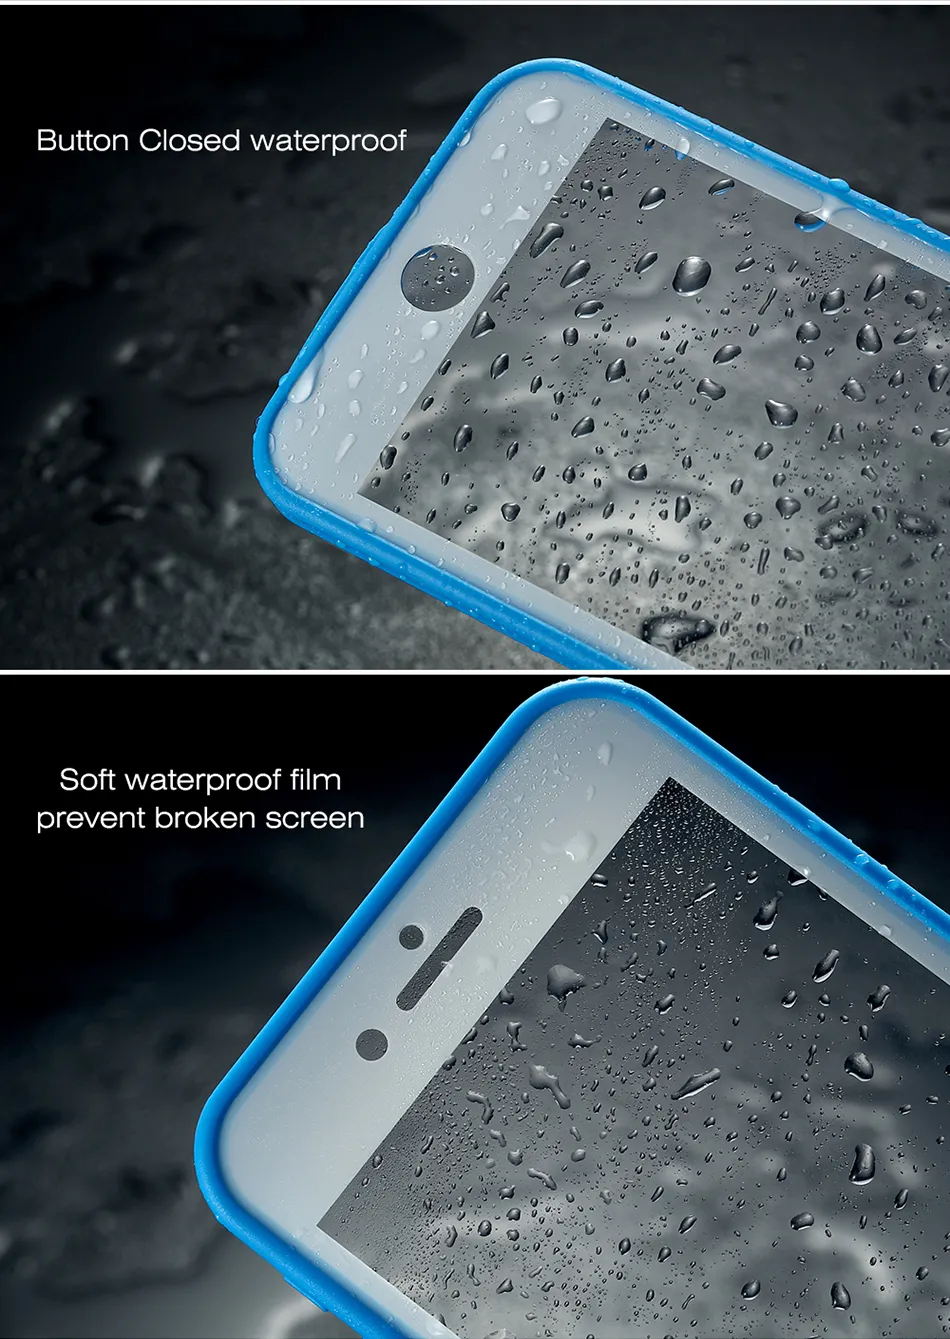 Vente en gros pour iPhone 8 étui écran tactile étuis étanches pour iPhone X 7 6s Plus Ultra mince 360 couverture de protection complète